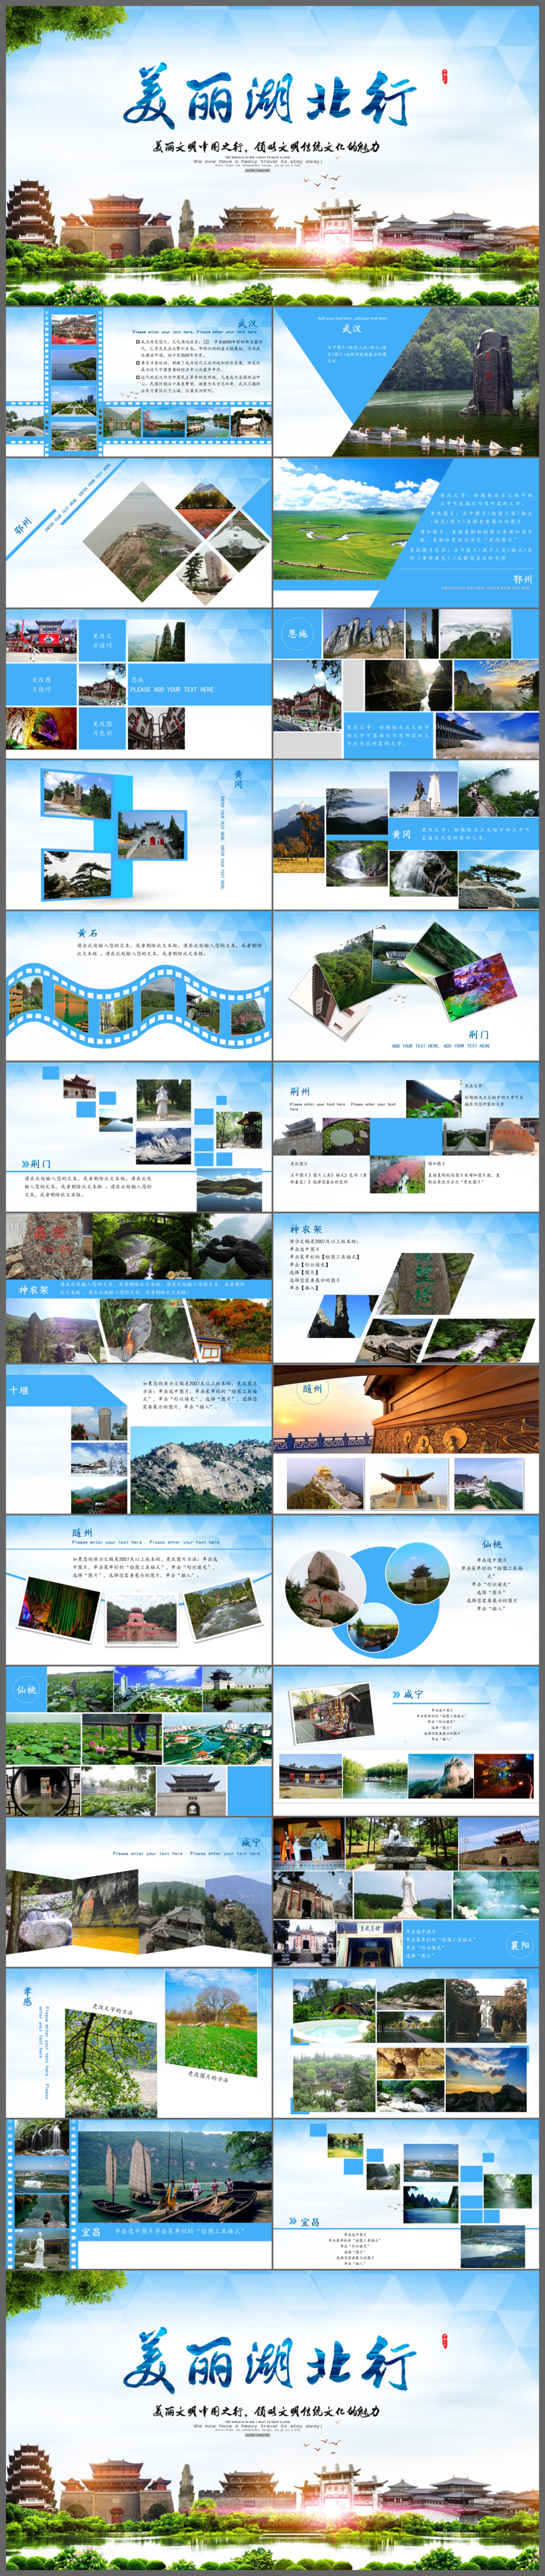 美丽中国行美丽湖北行旅行介绍旅游宣传PPT模板